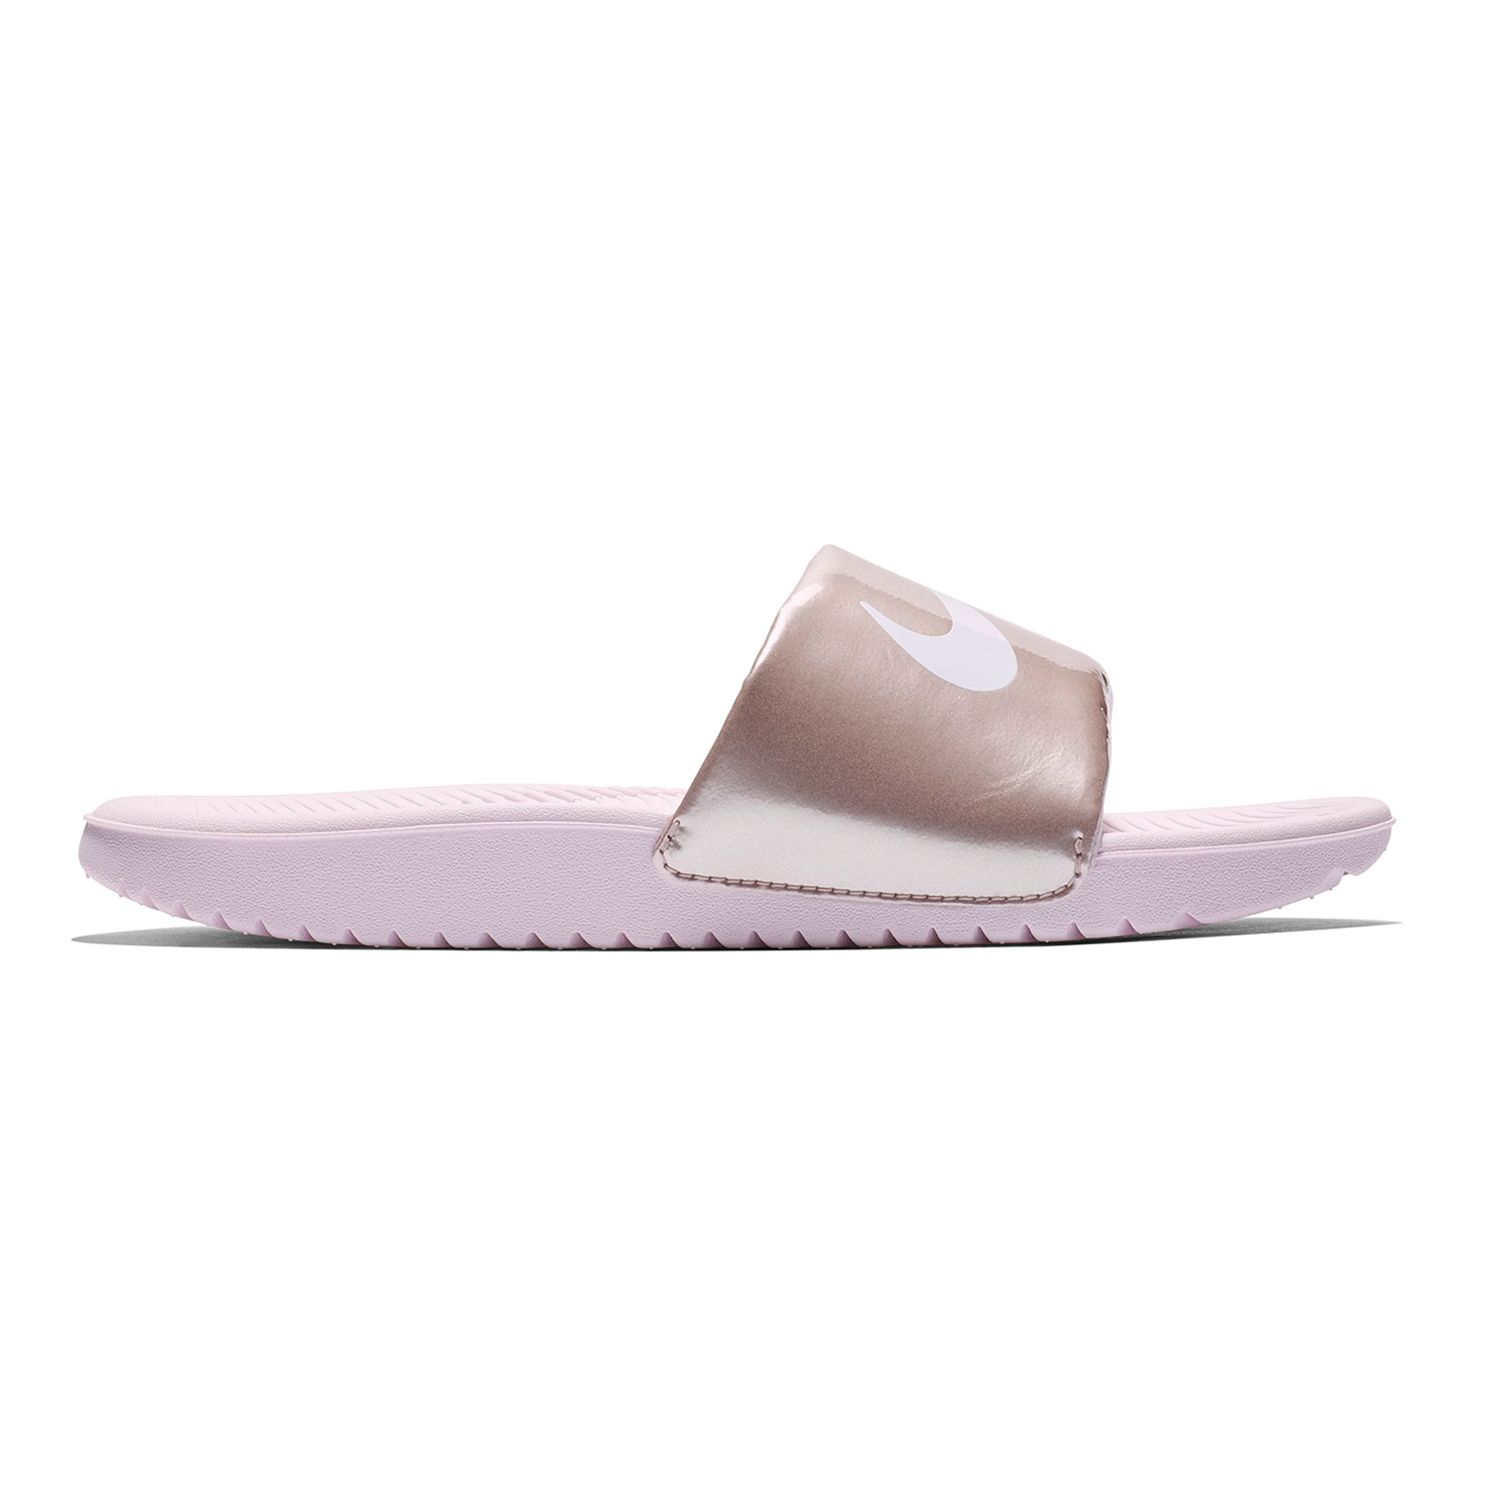 Nike Kawa Girls' Slide Sandals